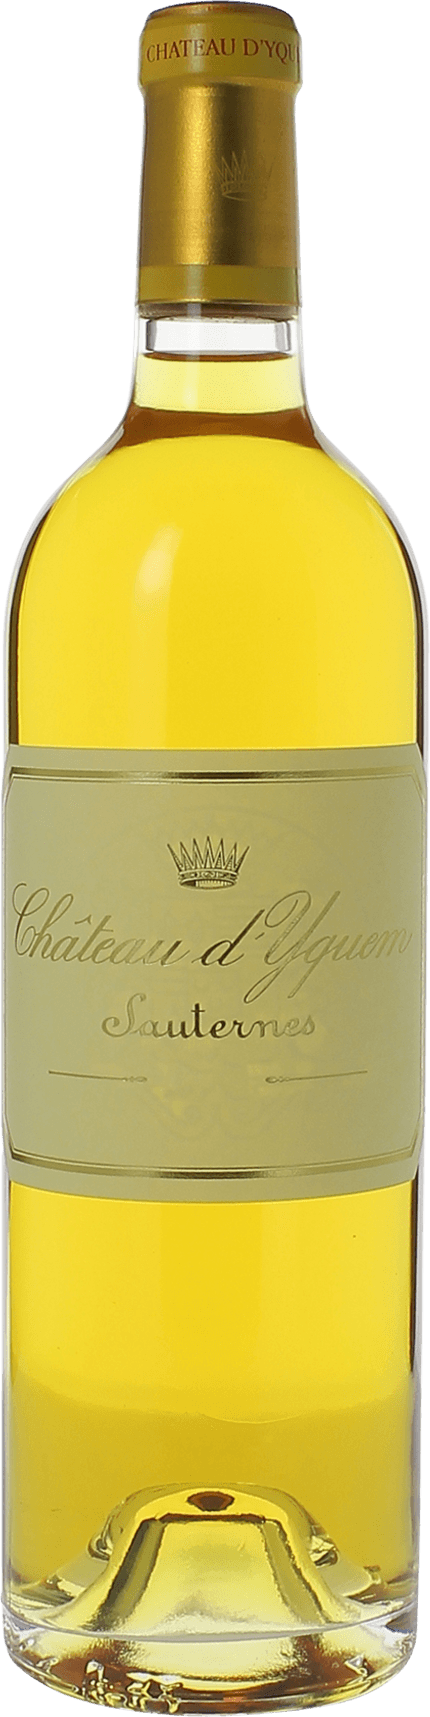 Yquem 1976 1er Grand cru class Sauternes, Bordeaux blanc